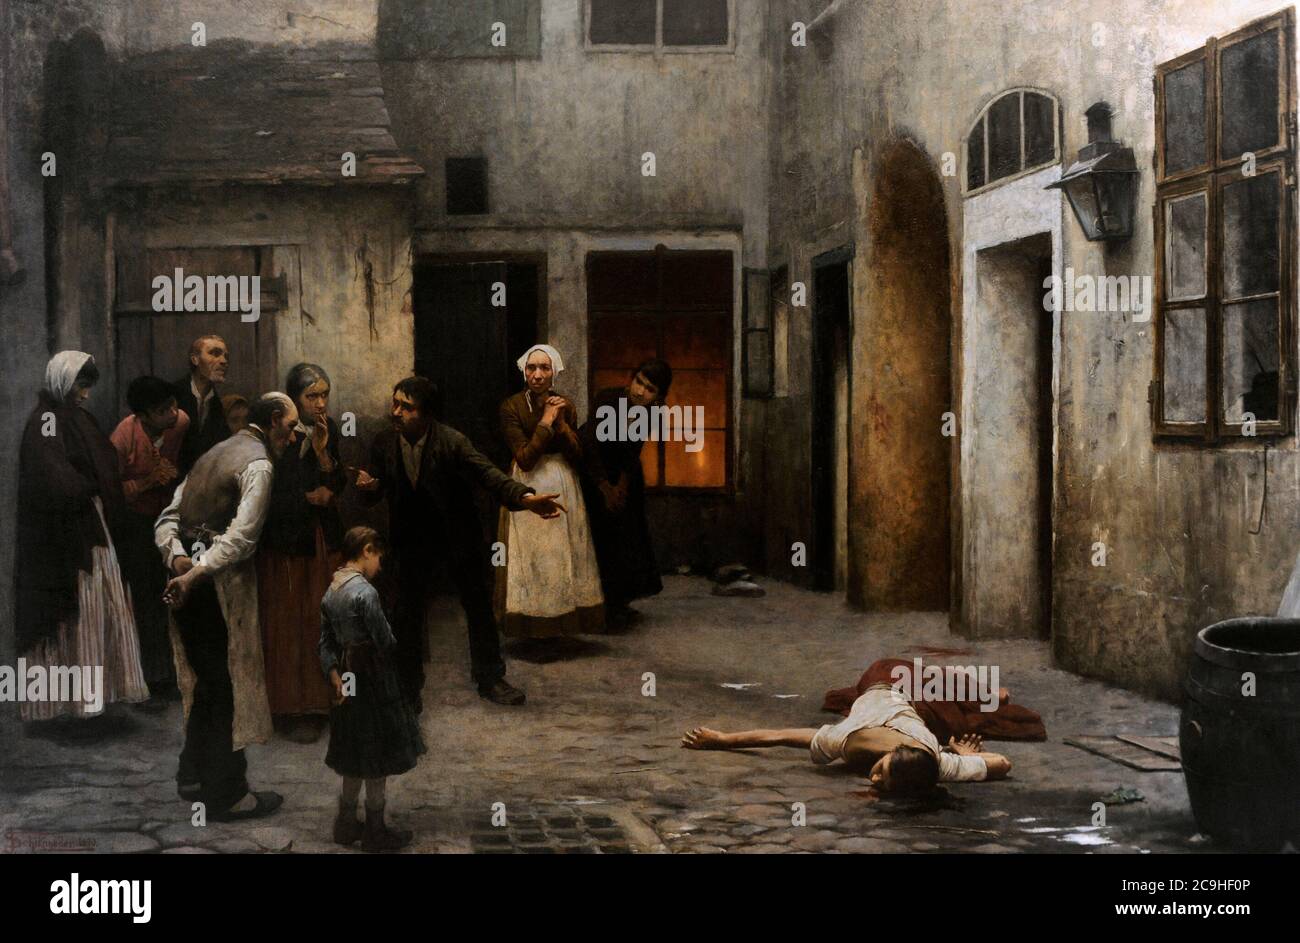 Jakub Schikaneder (1855-1924). Tschechischer Maler. Mord im Haus, 1890. Öl auf Leinwand. Nationalgalerie. Prag. Tschechische Republik. Stockfoto